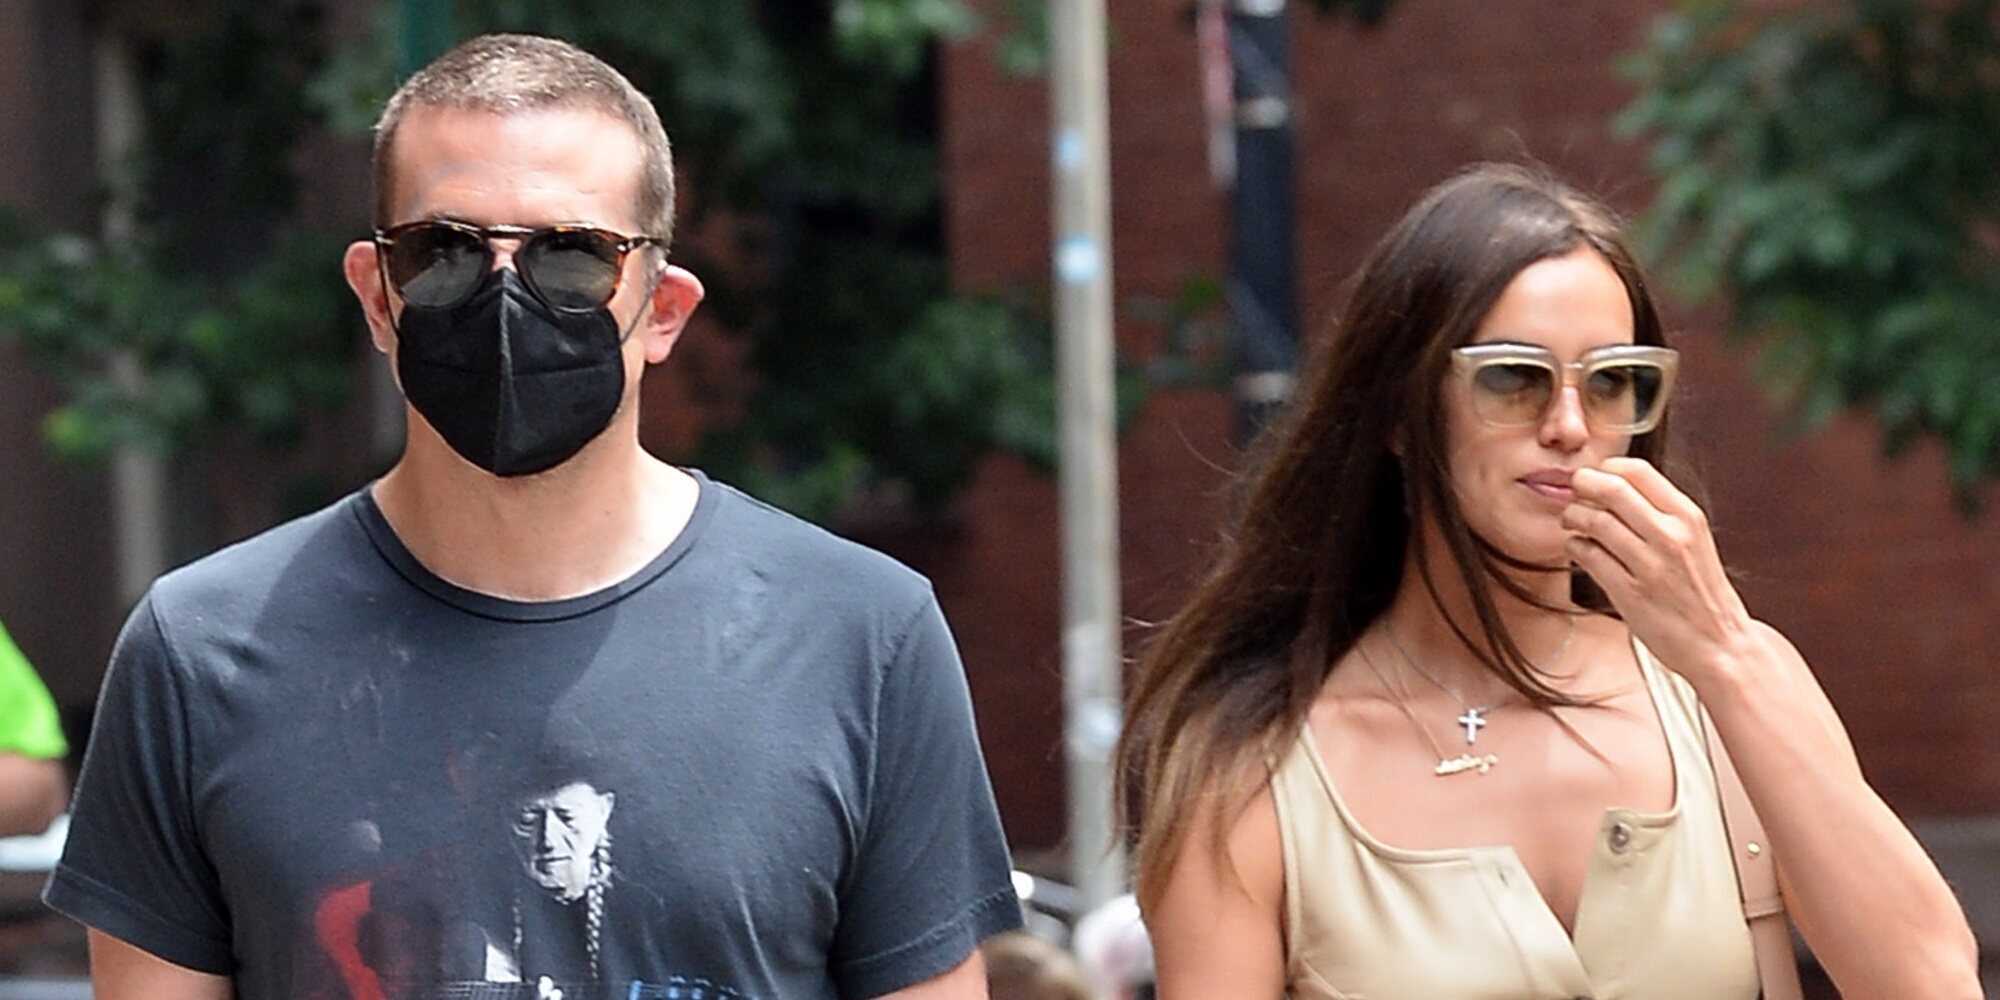 Irina Shayk y Bradley Cooper, dos ex bien avenidos de paseo con su hija por las calles de Nueva York